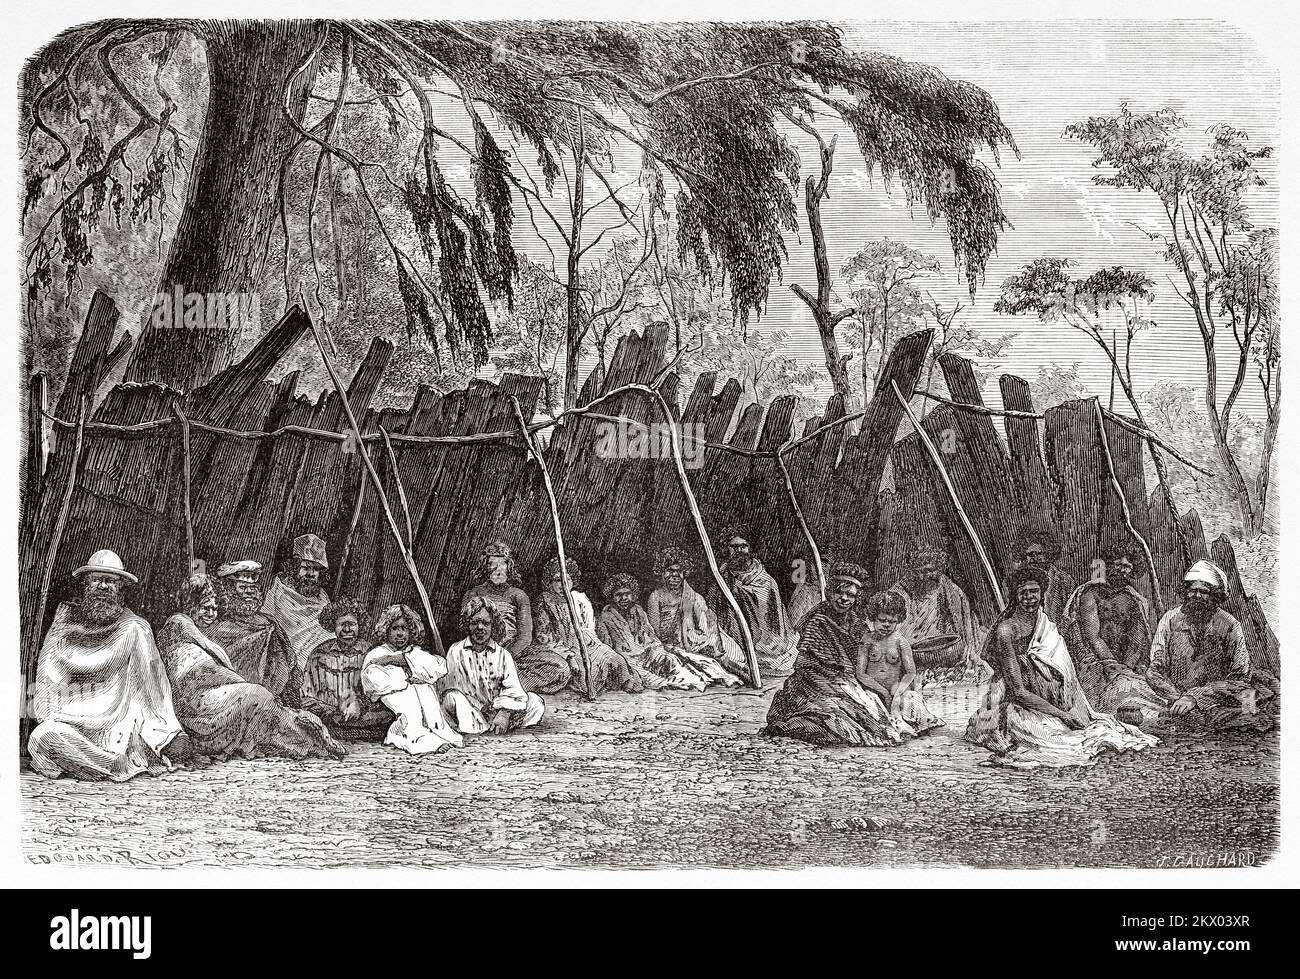 Australisches Heimatlager, australische Bundesstaaten Victoria, Australien. Souvenir eines französischen Hausbesetzers in Australien von H. de Castella 1854-1856 Stockfoto